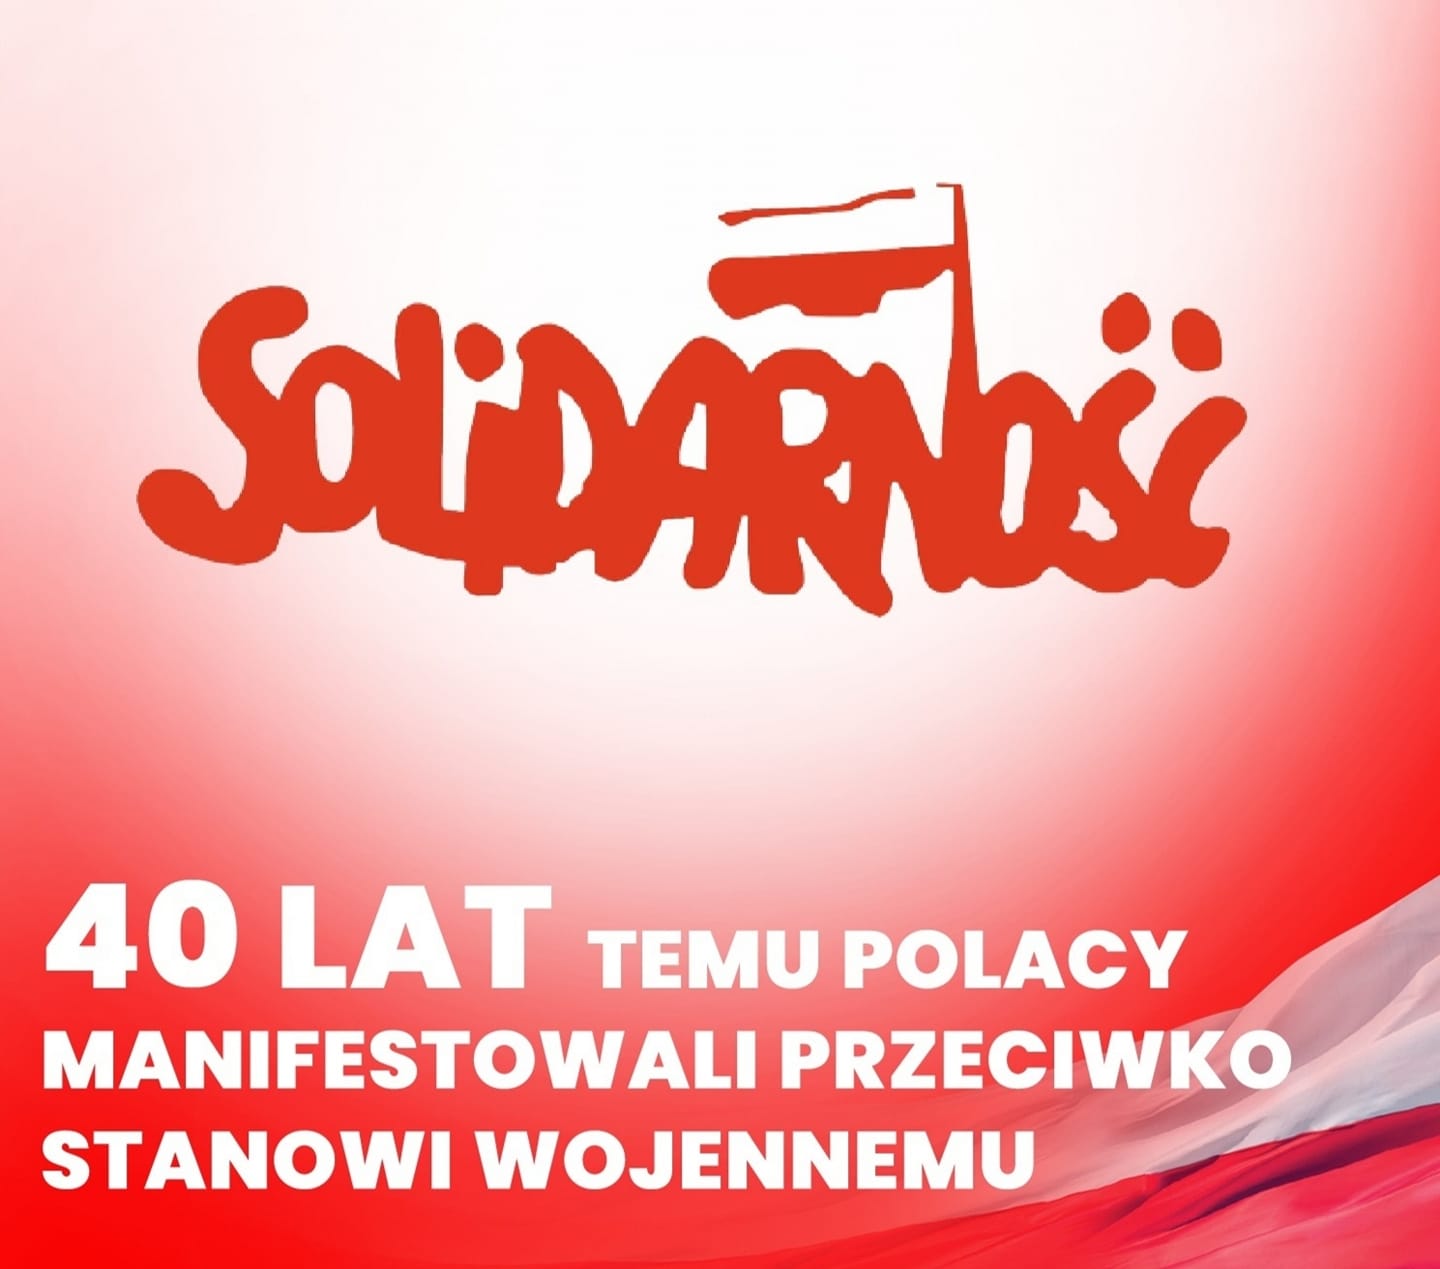 Obchodzimy dzisiaj Dzień Solidarności i Wolności na pamiątkę podpisania Porozumień Sierpniowych. 40 lat temu natomiast doszło do wielkiej manifestacji przeciwko wprowadzeniu stanu wojennego w Polsce.